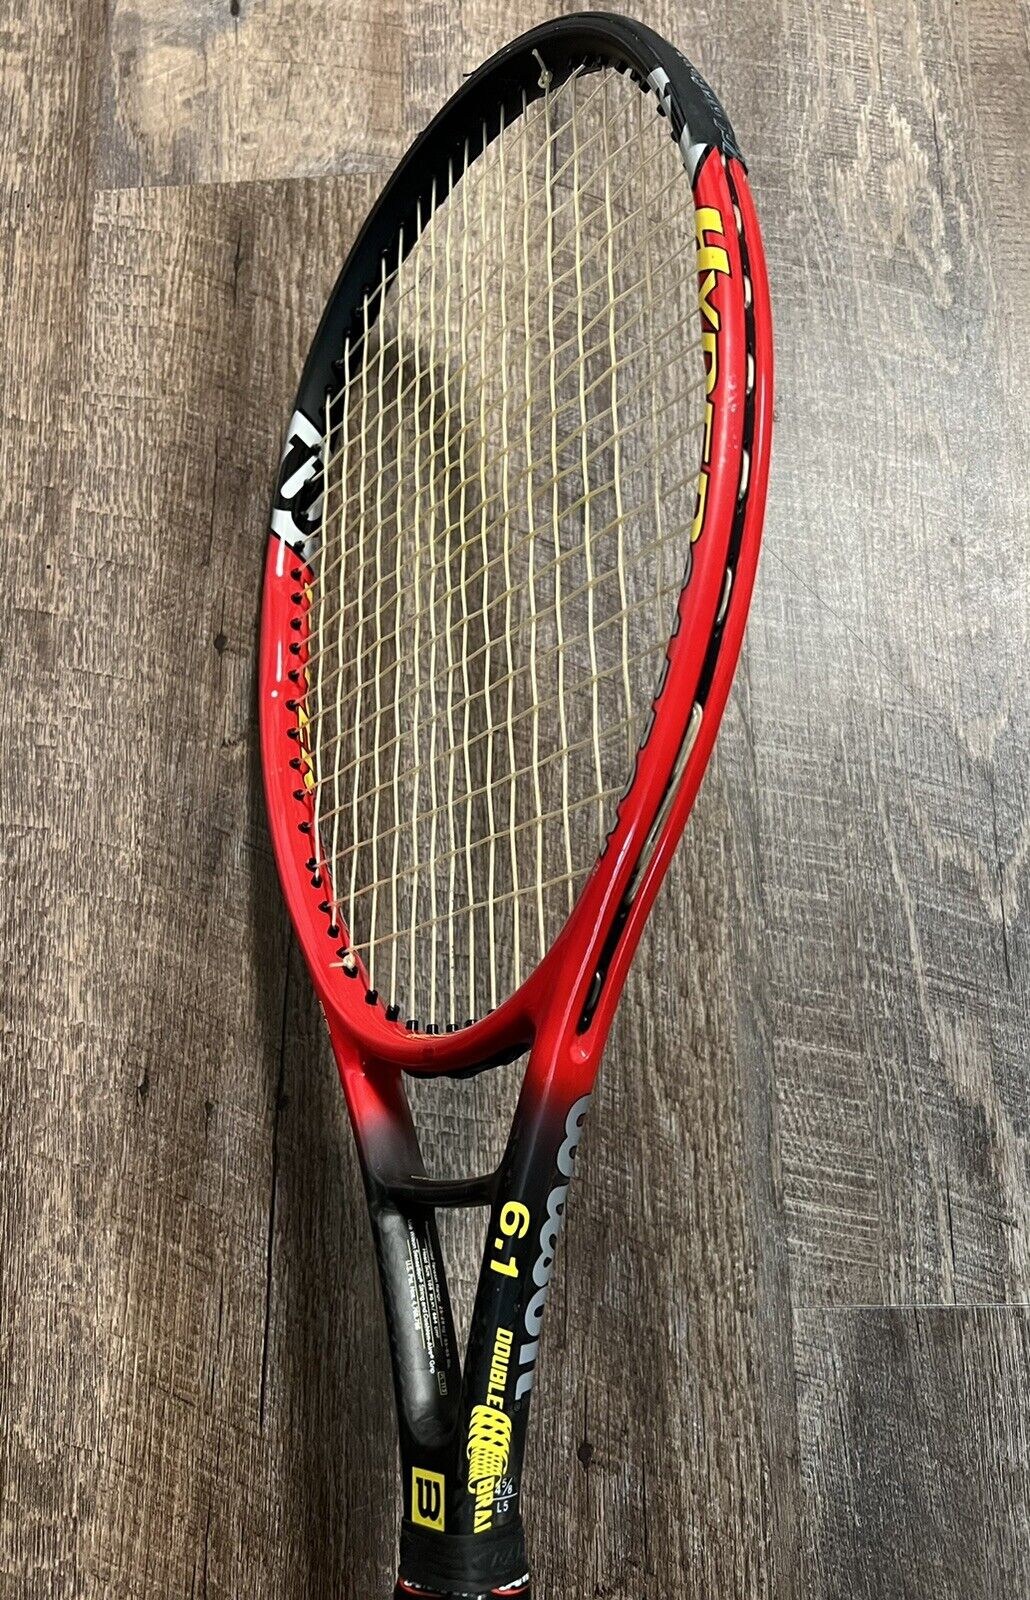 Wilson Hyper ProStaff 6.1 Hyper Carbon Tennis Racket Racquet 4 5/8